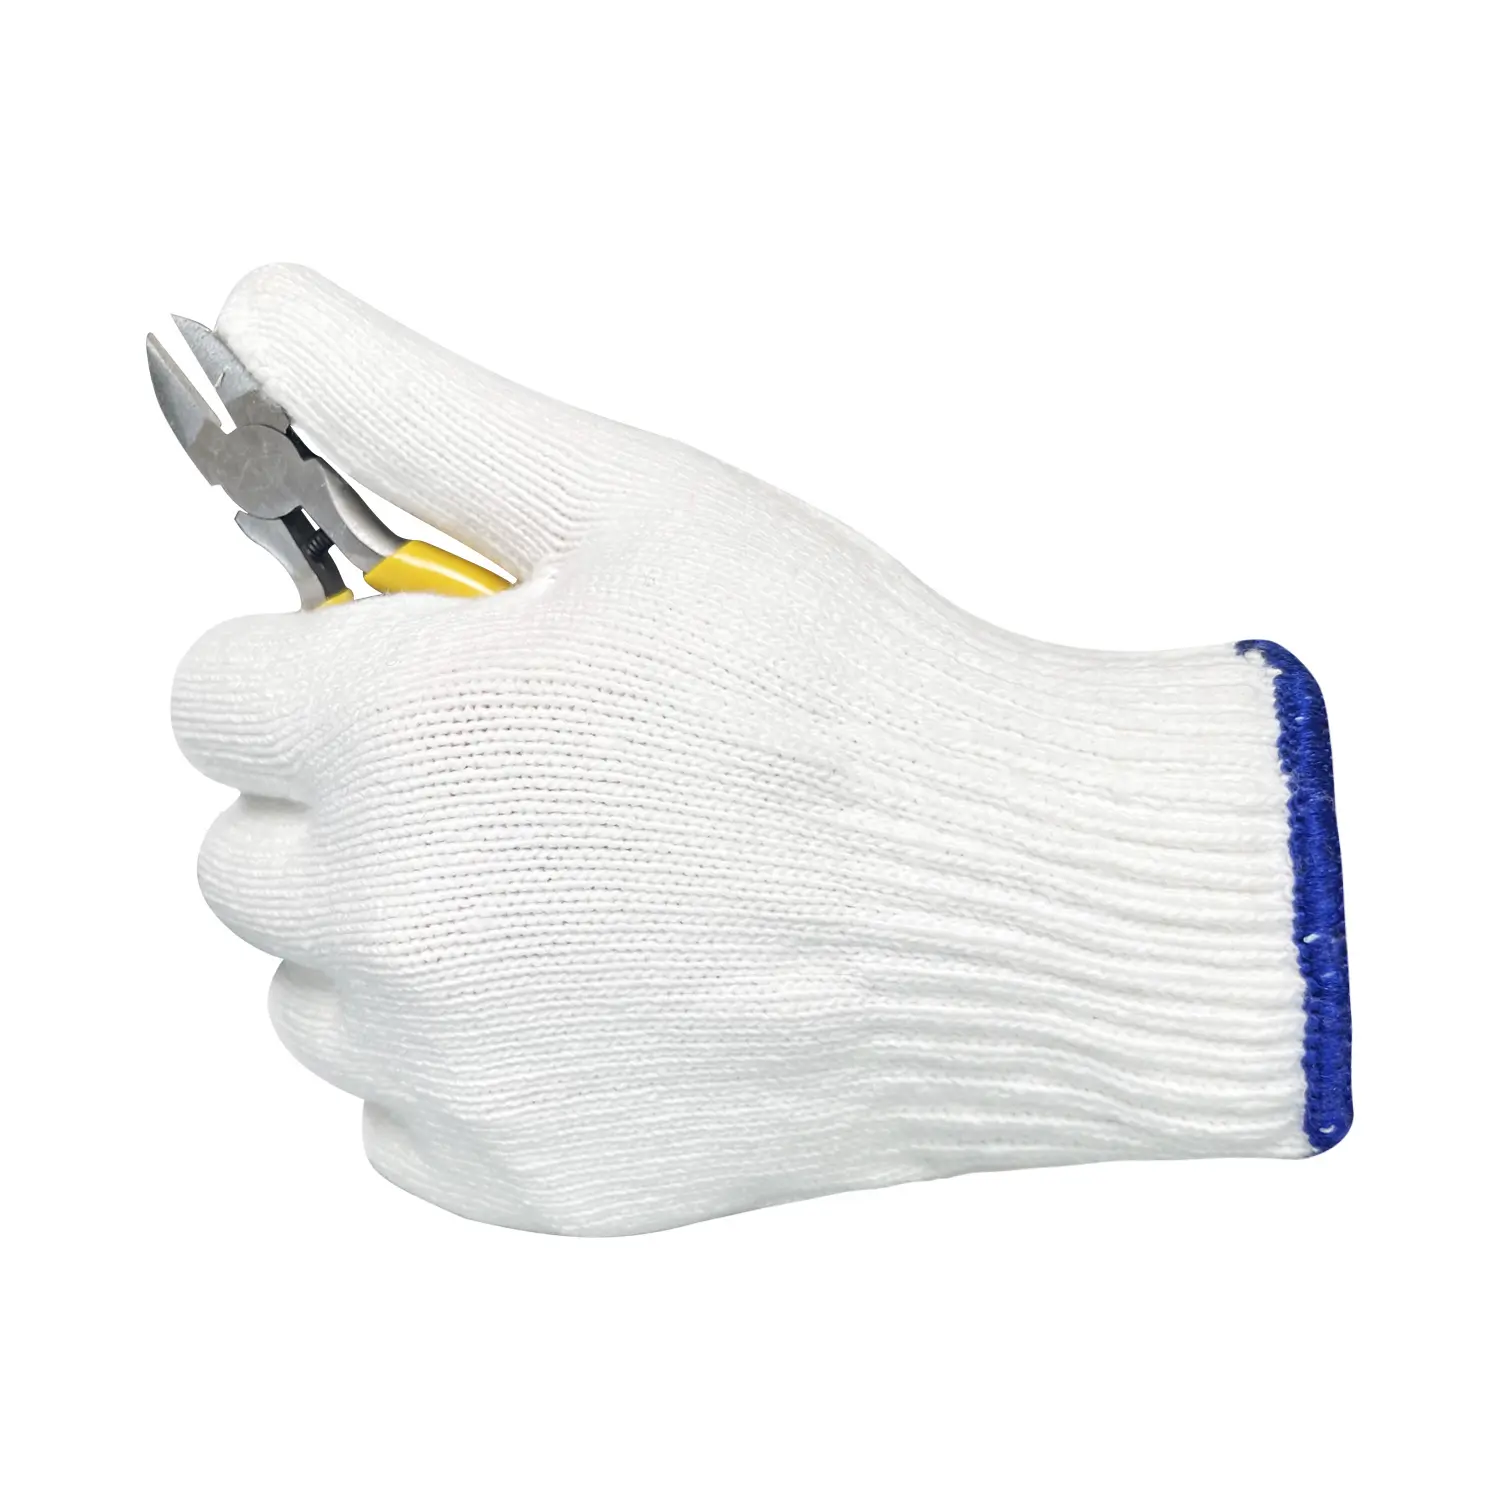 Saf beyaz pamuklu örme eldiven eldivenler iş eldivenleri inşaat için